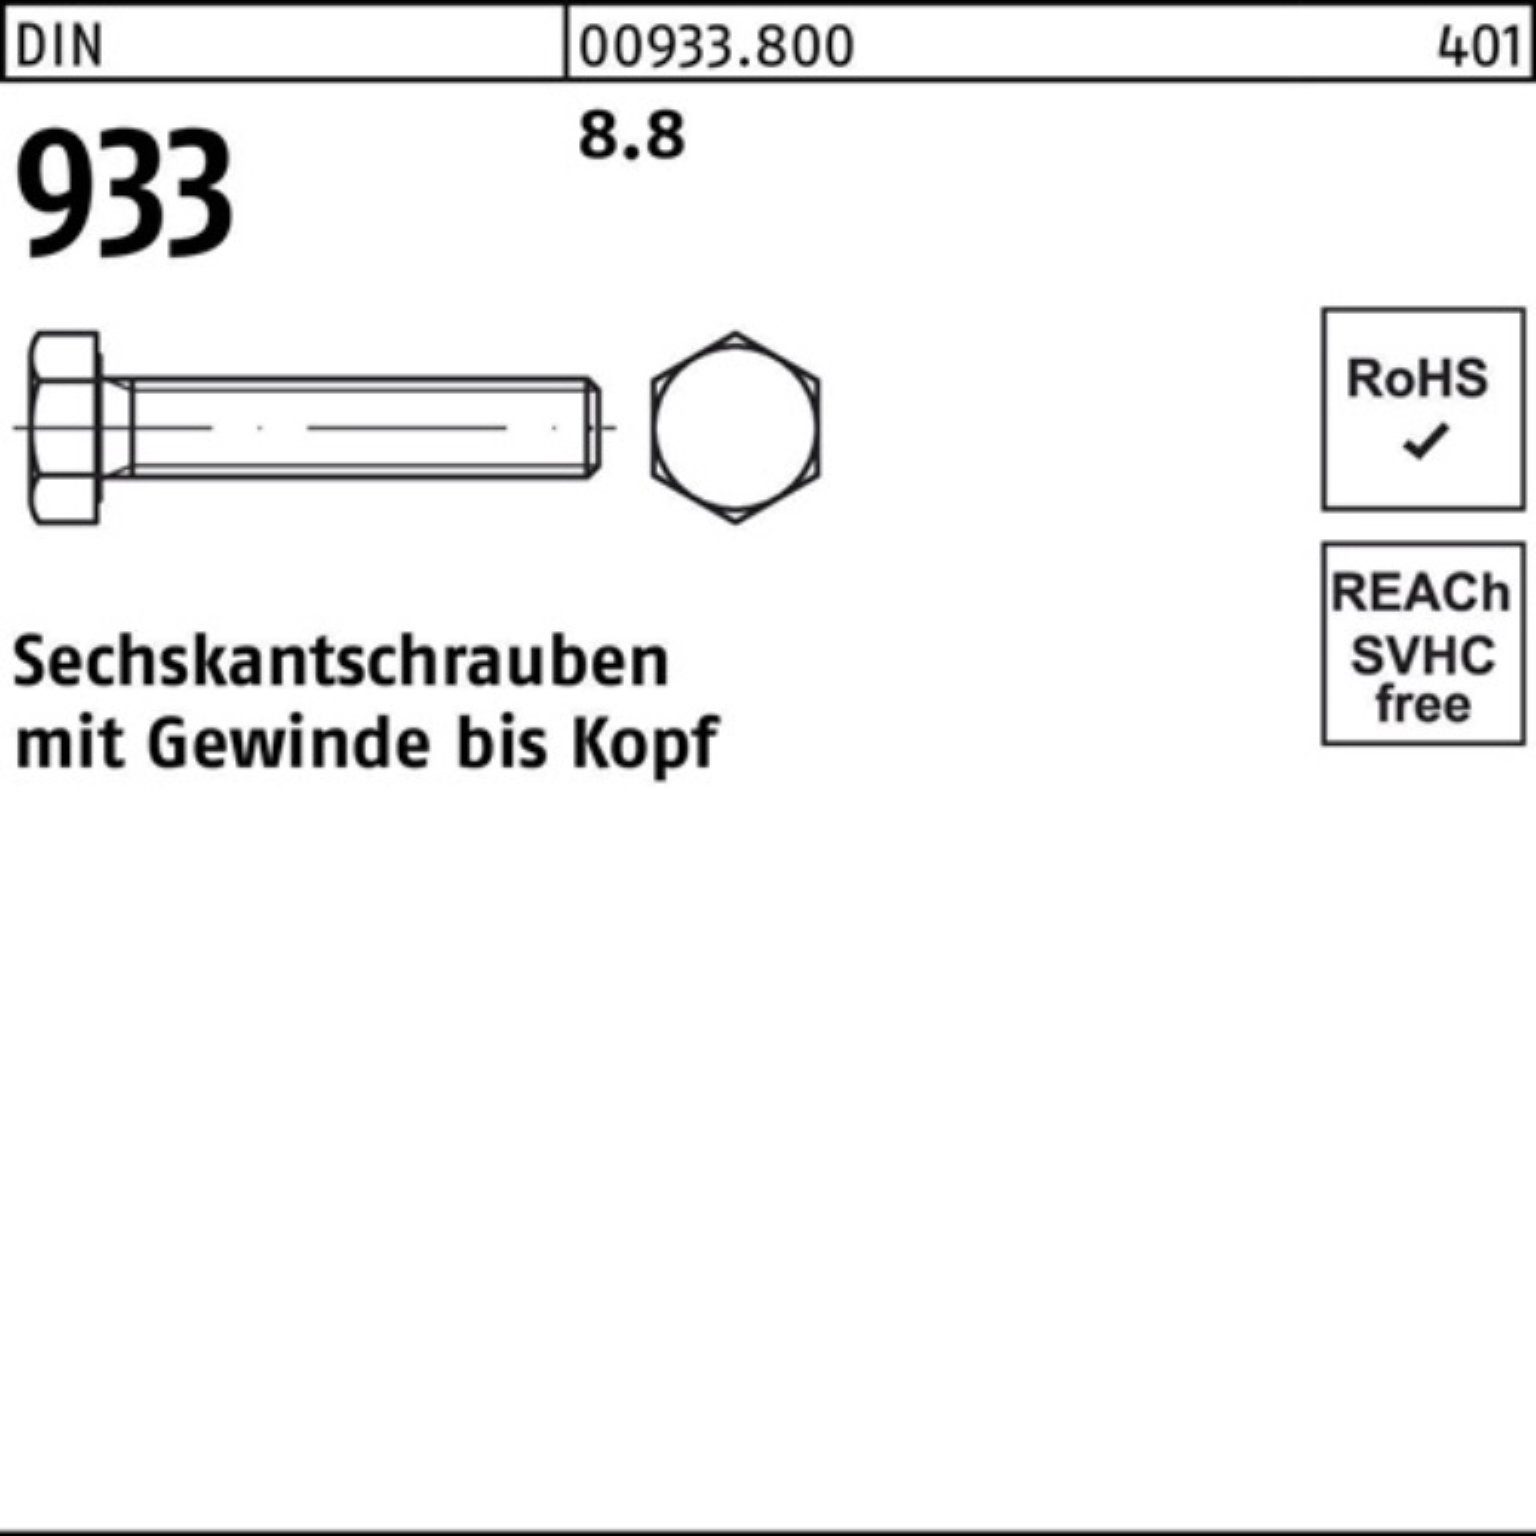 DIN 100 VG 8.8 100er Sechskantschraube Reyher Pack Stück 1 933 DIN 933 Sechskantschraube M30x